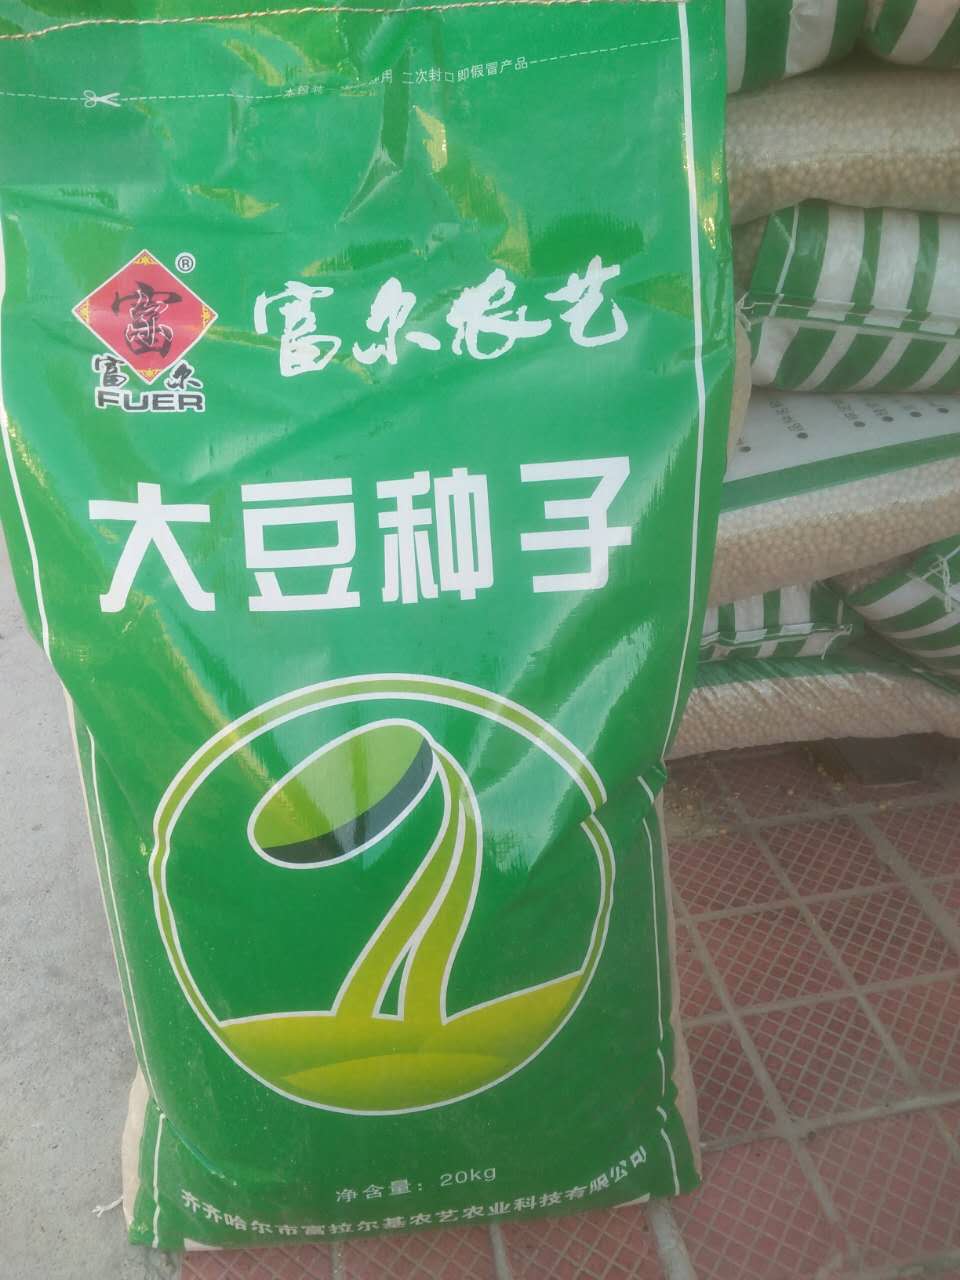 富尔农艺哈尔滨公司大豆品种展示,火热订购中